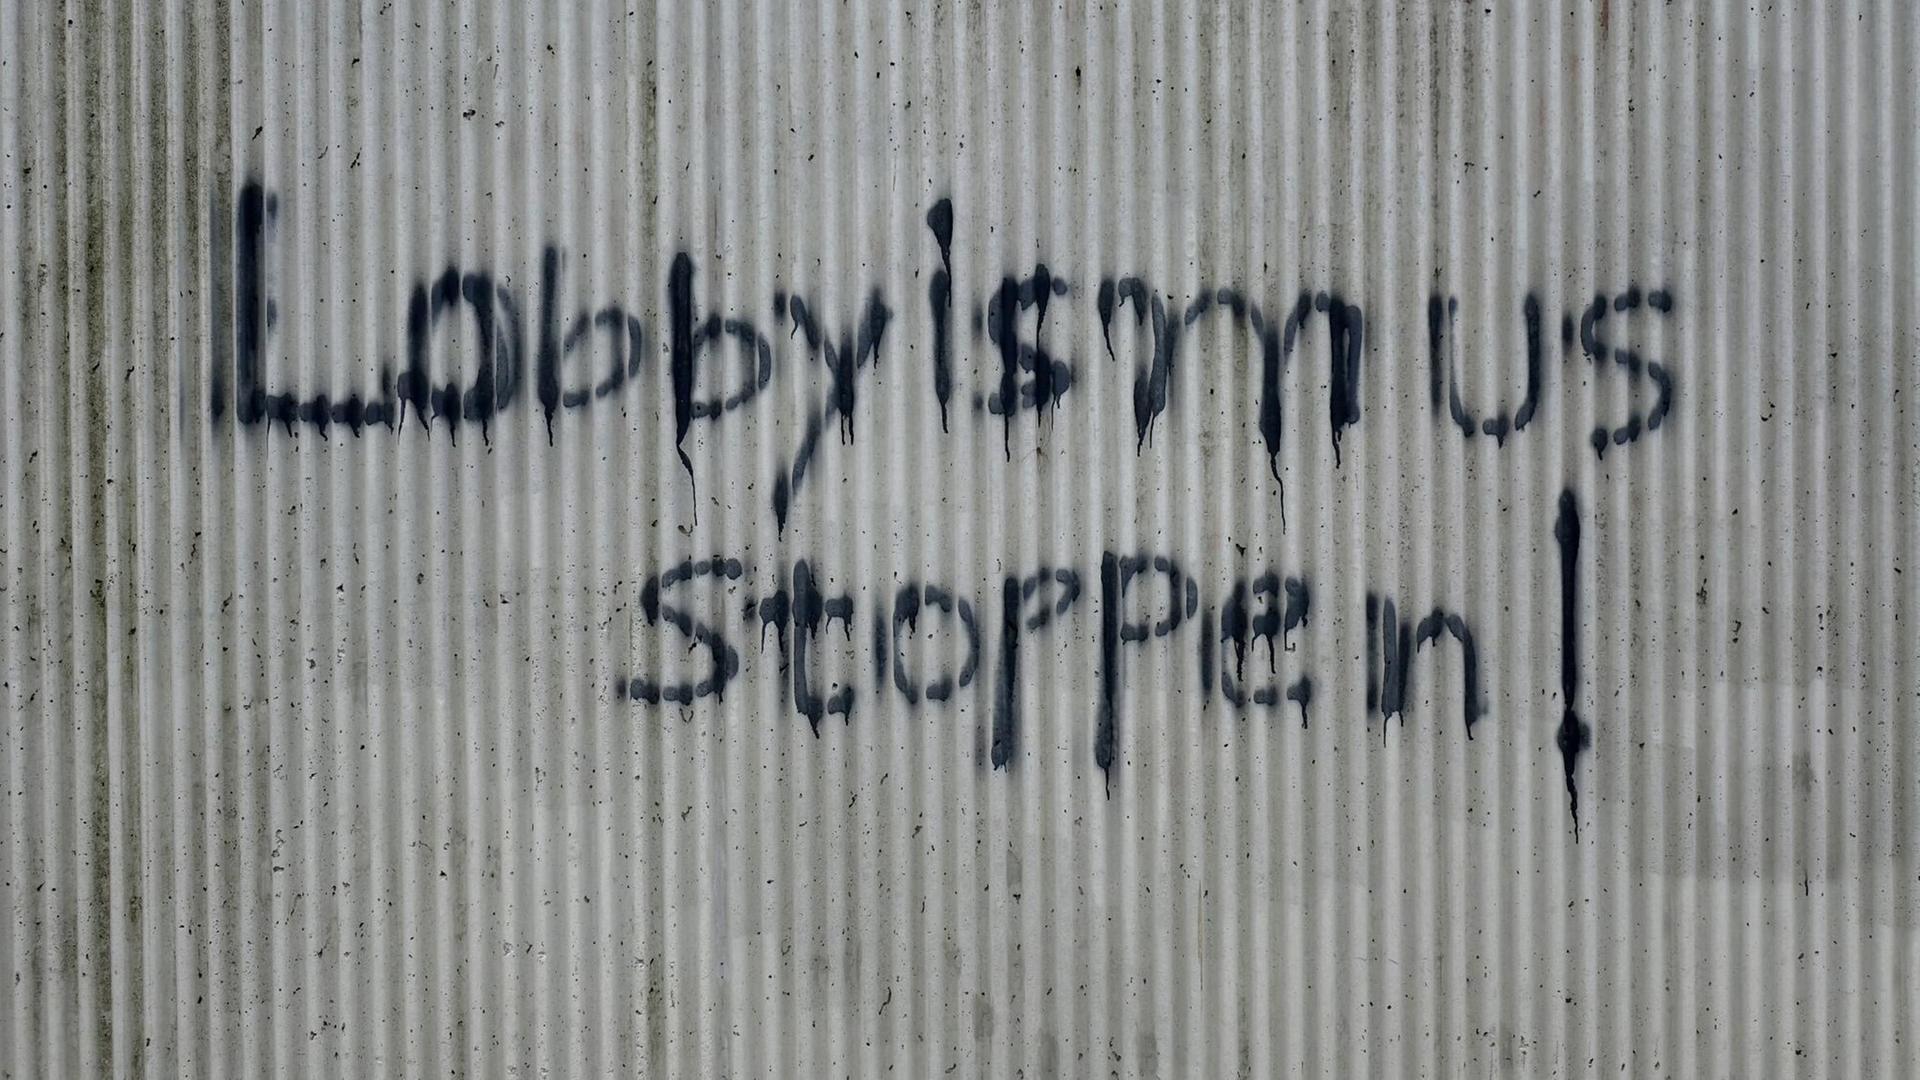 Ein Graffiti mit der Aufschrift "Lobbyismus stoppen" steht an eine Hauswand gesprüht.